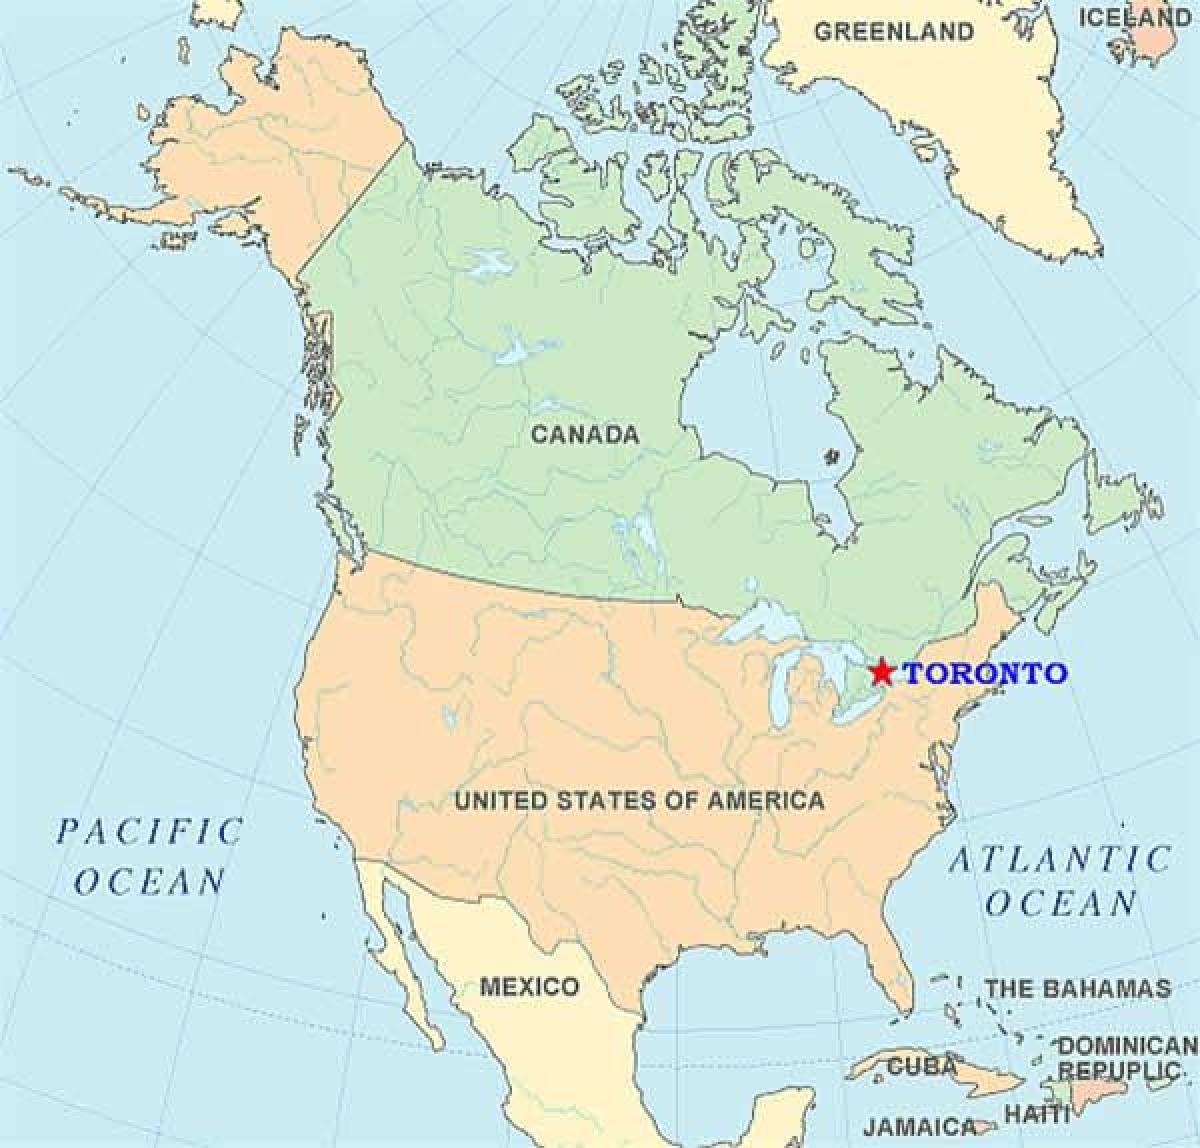 નકશો ટોરોન્ટો પર યુનાઇટેડ સ્ટેટ્સ